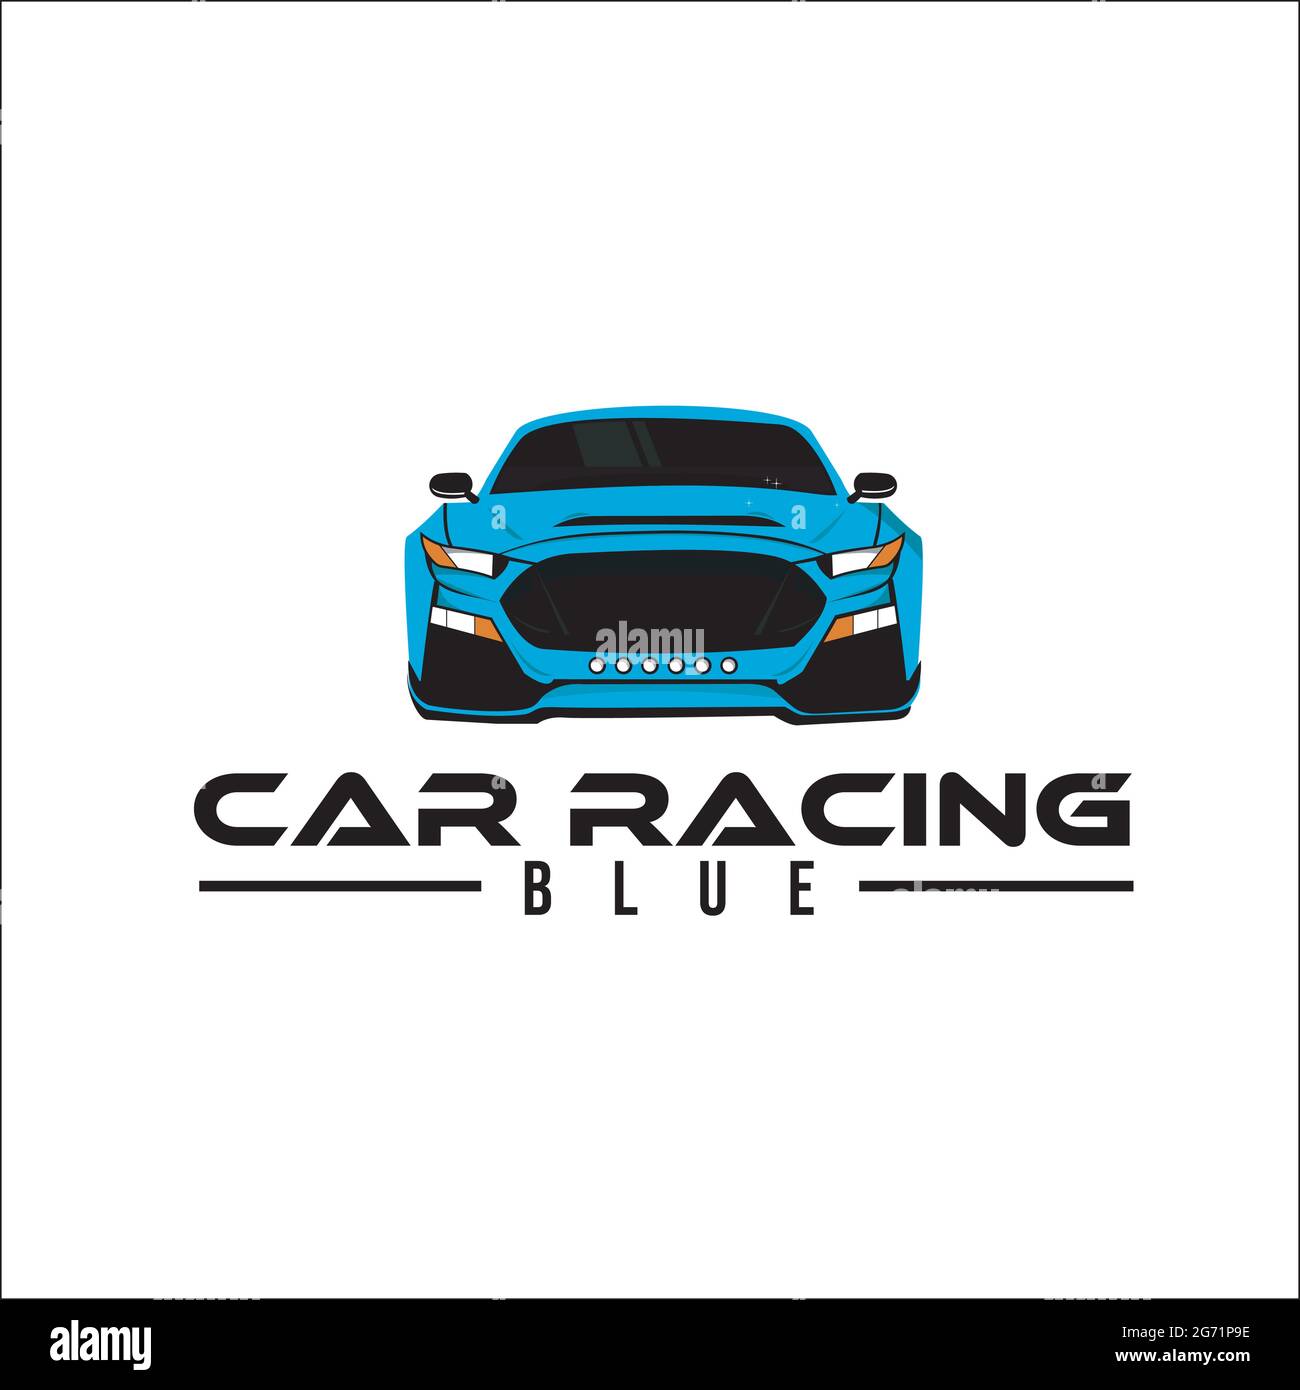 Logos de coches: señas de identidad - RACE